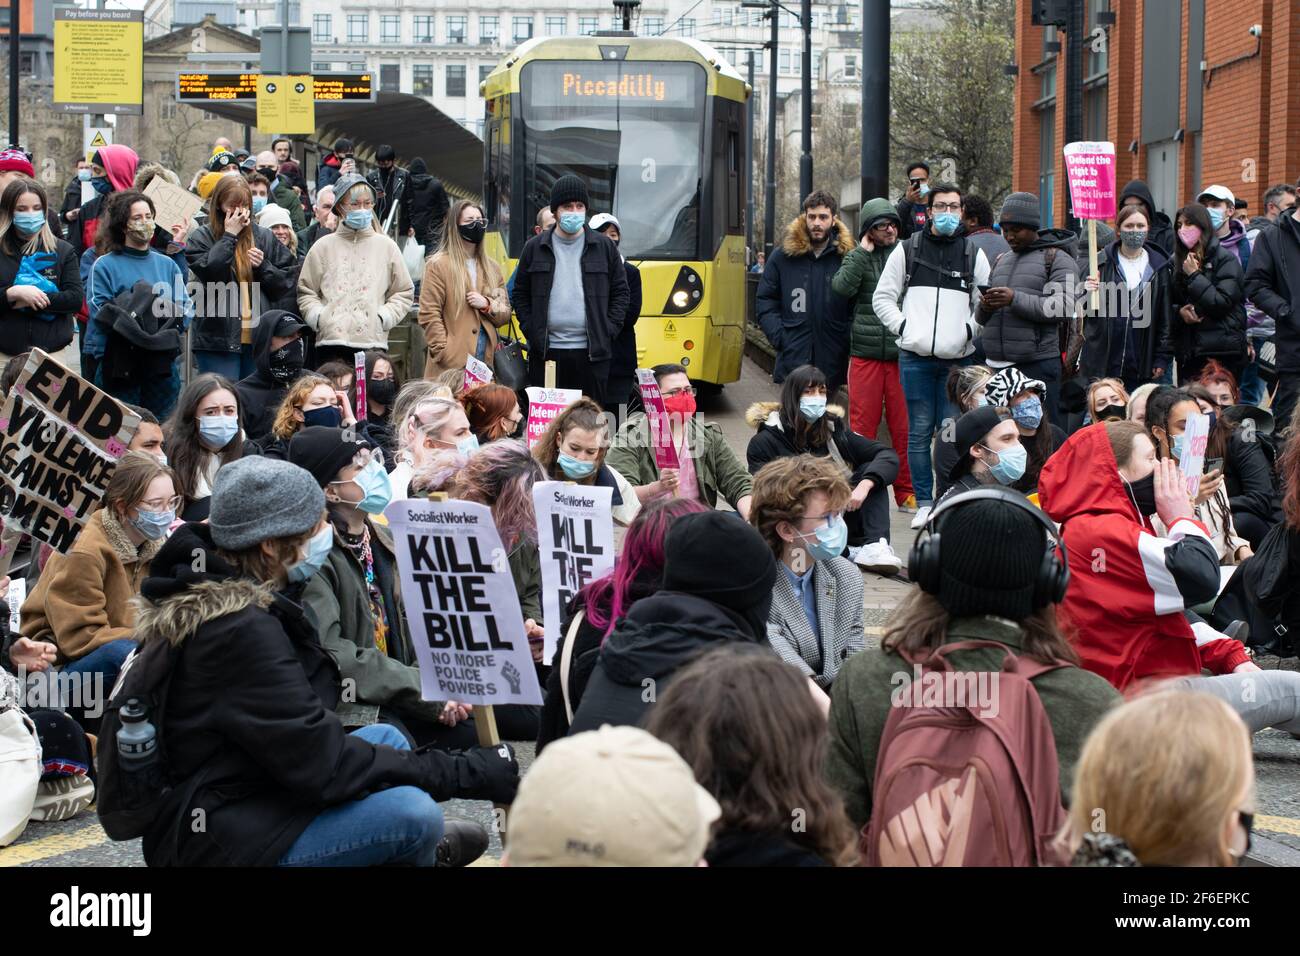 Tötet den Bill-Protest, Manchester, Großbritannien. PiccadillyMetrolink hält an, während Demonstranten die Piccadilly-Straßenbahn während der nationalen Sperre in England blockierten. Stockfoto